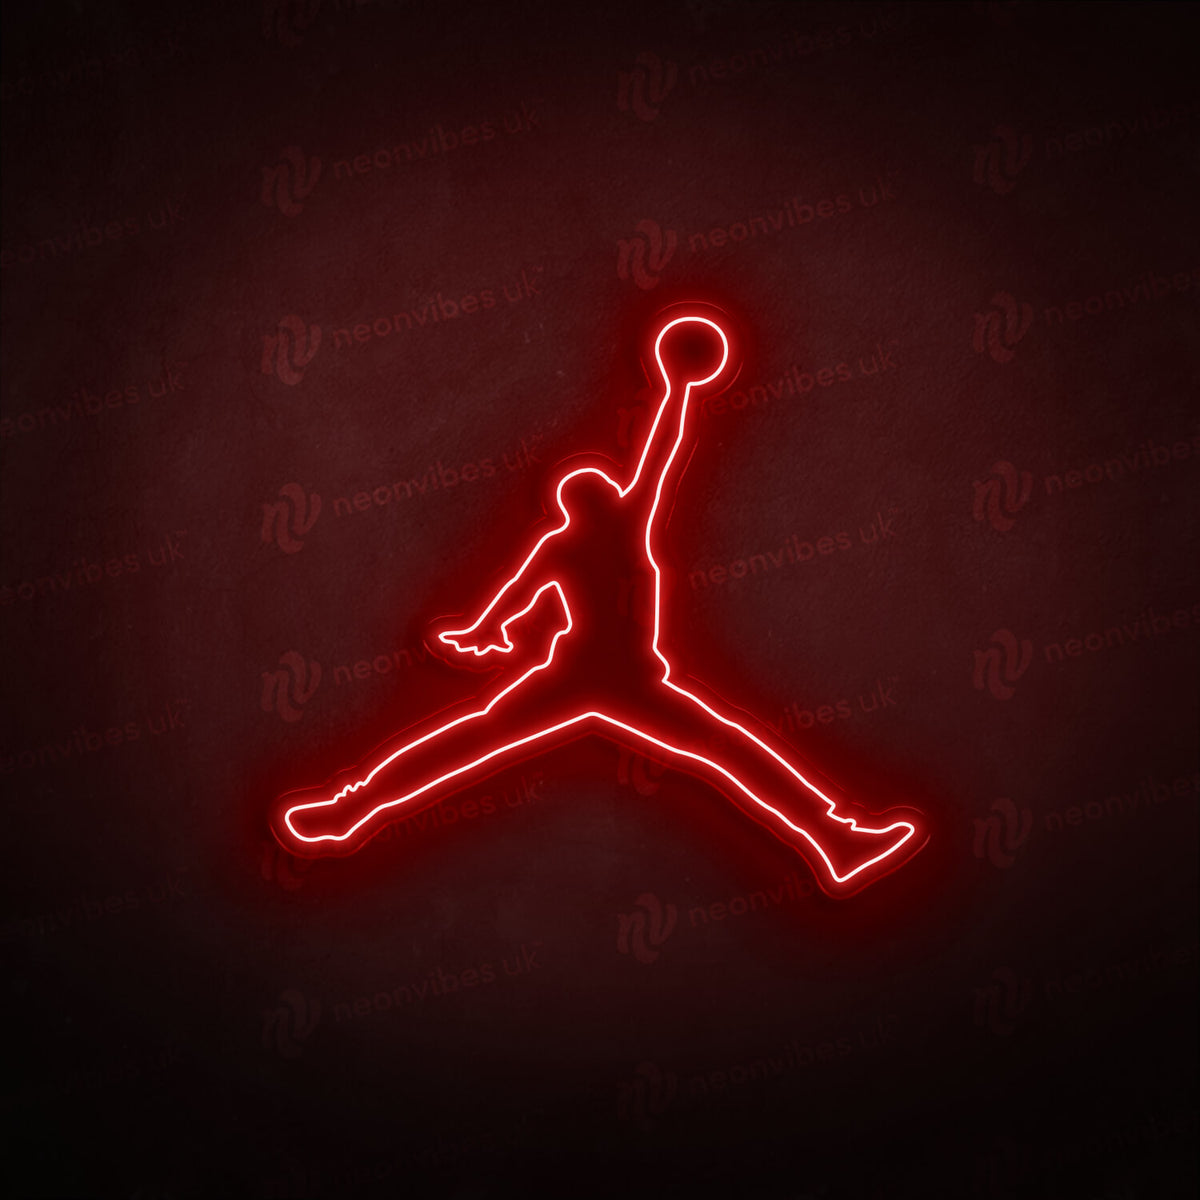 Jordan neon sign